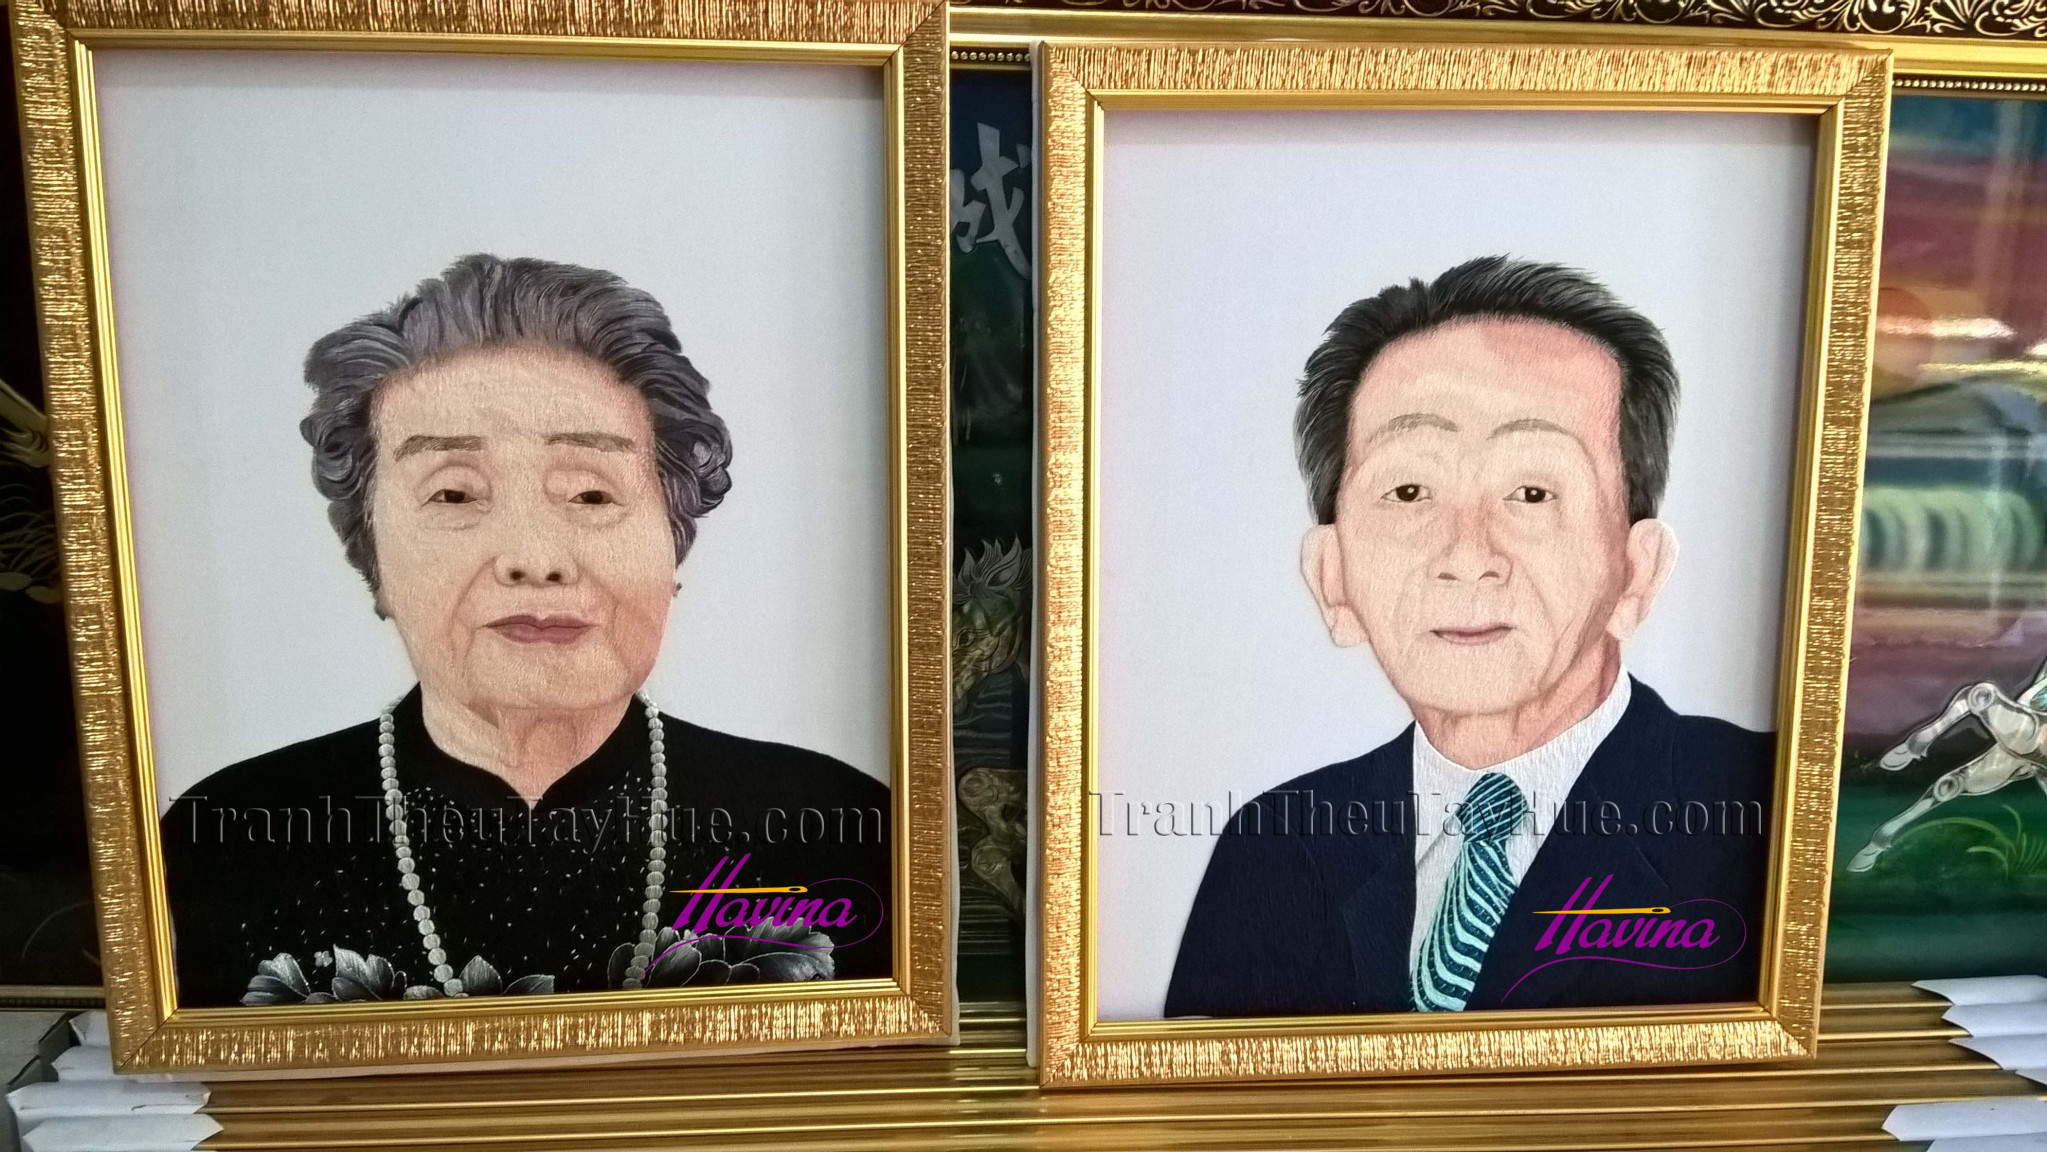 Tranh thêu chân dung ba mẹ của TGĐ công ty PHI KHA ở Gò Vấp